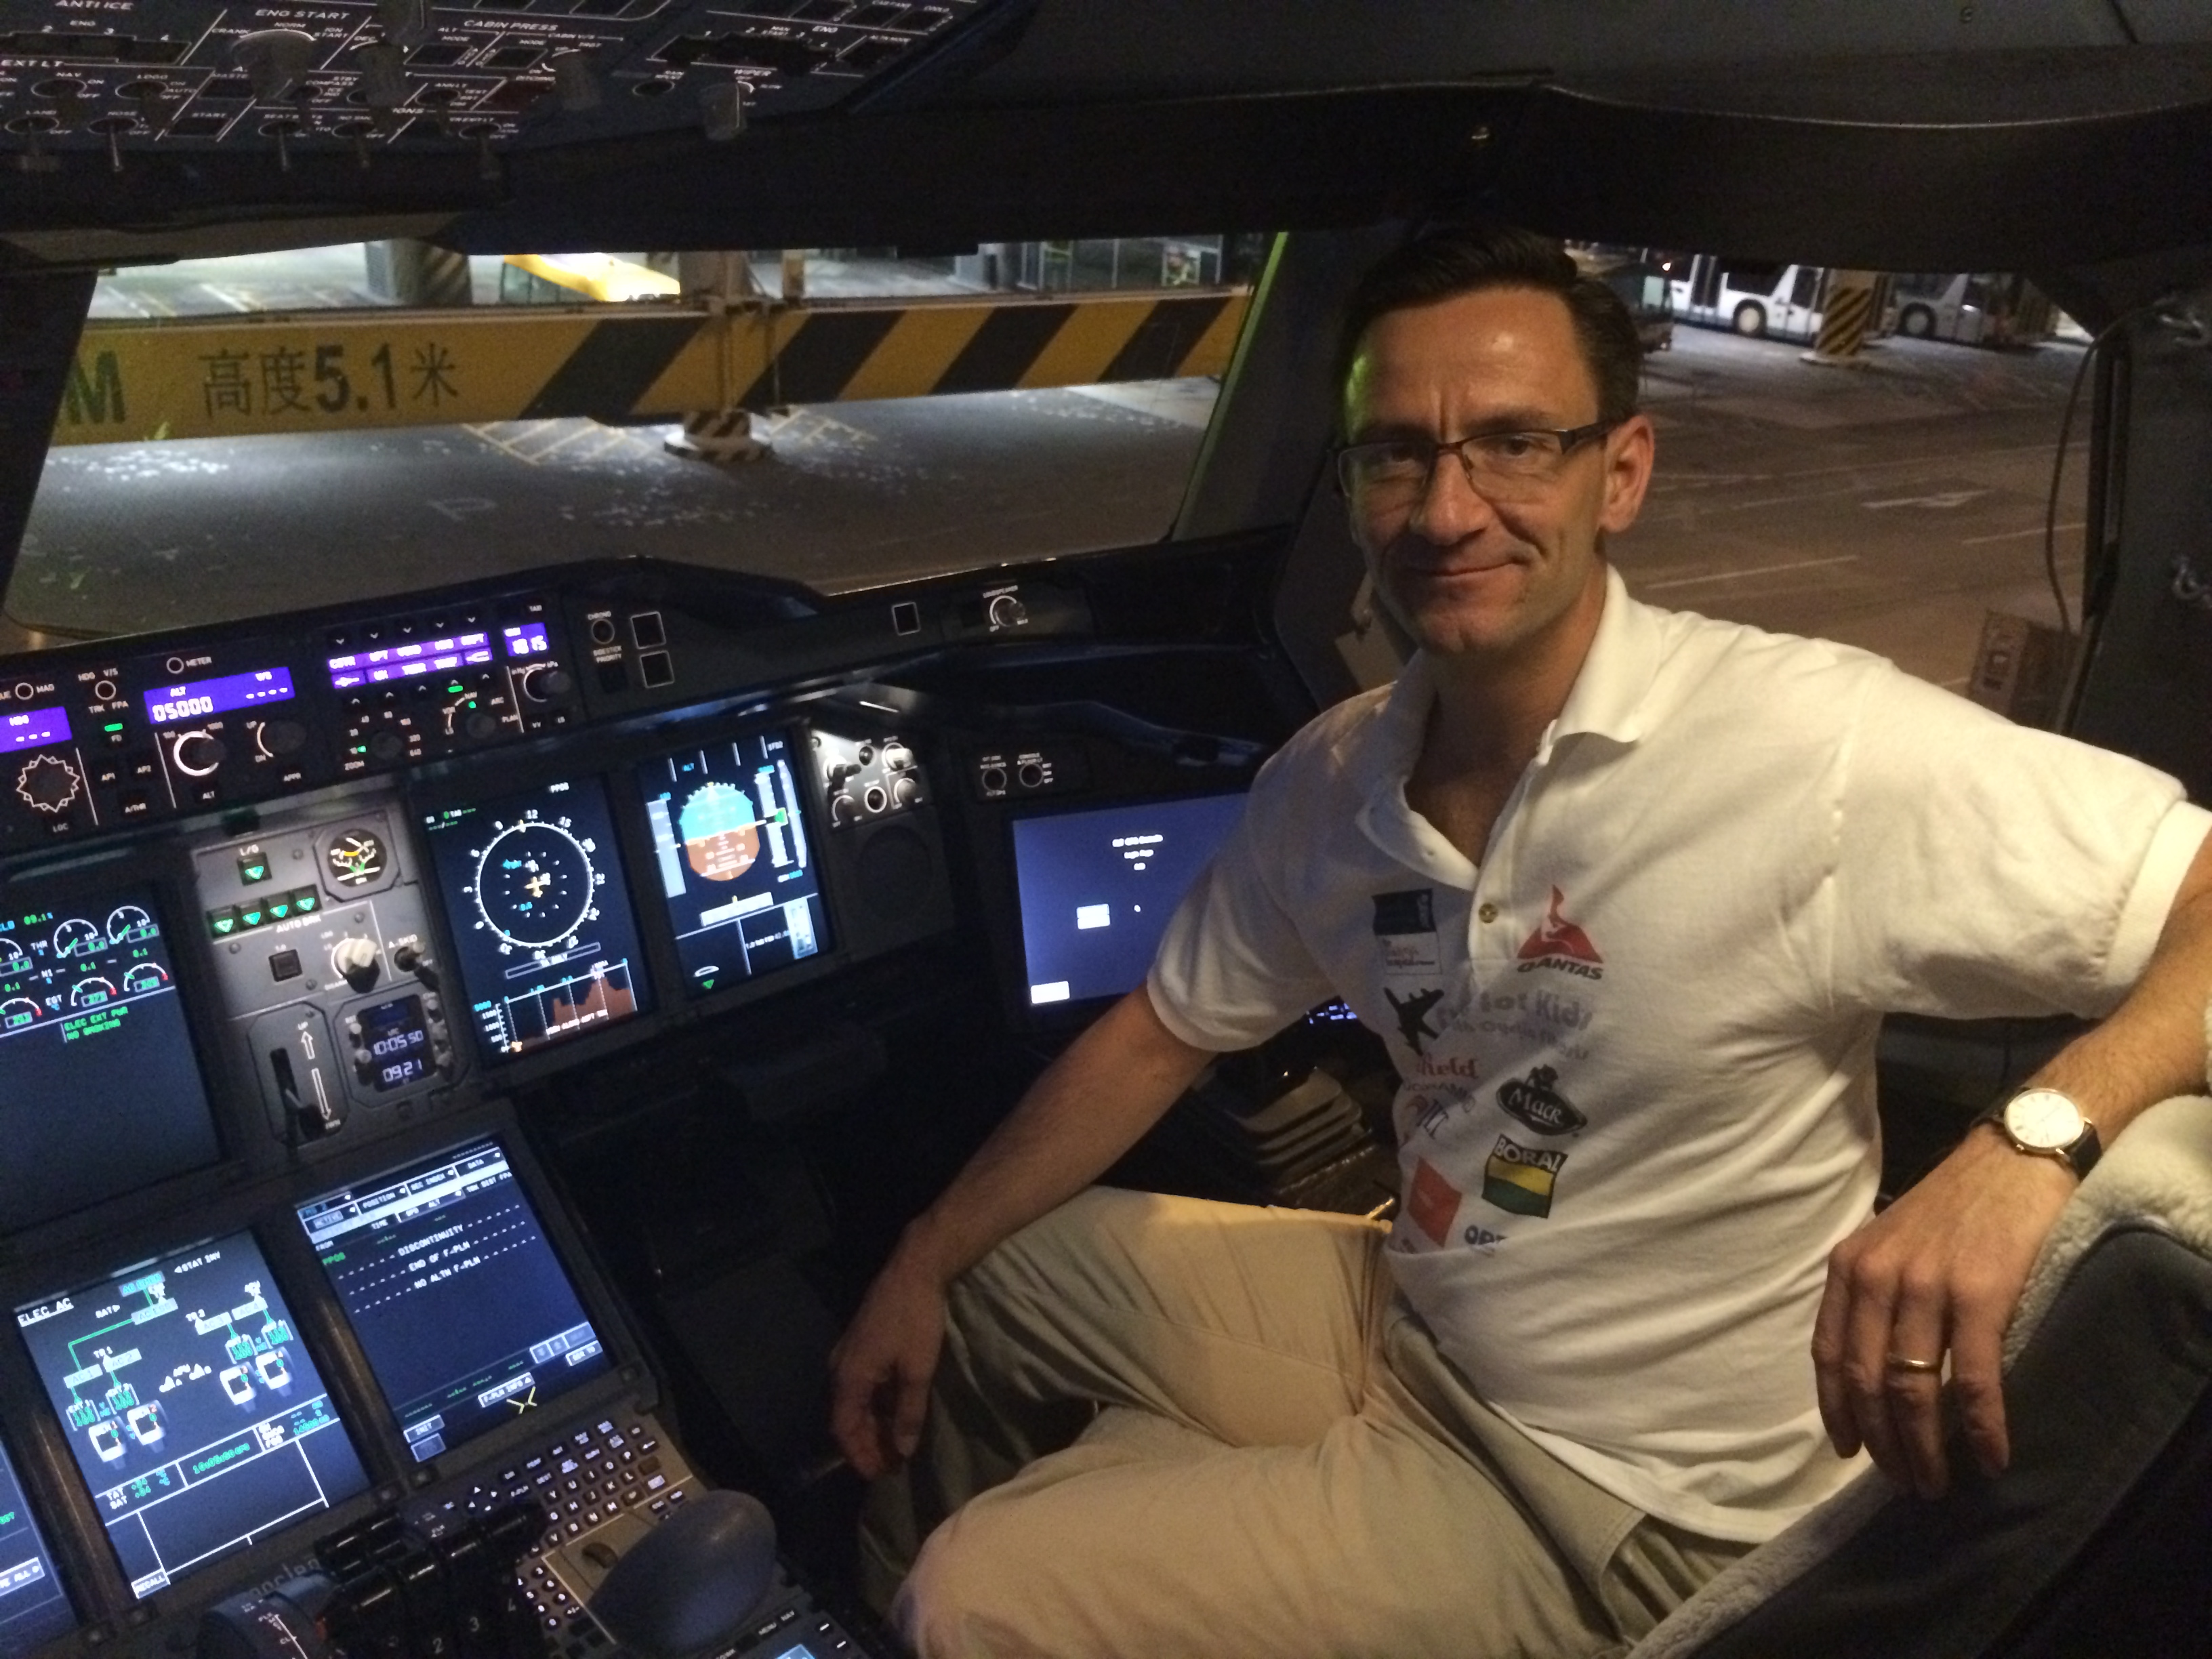 This undated photo shows Matthias Fuchs in the cockpit of an Airbus A380 at Hong Kong International Airport. (Matthias Fuchs)